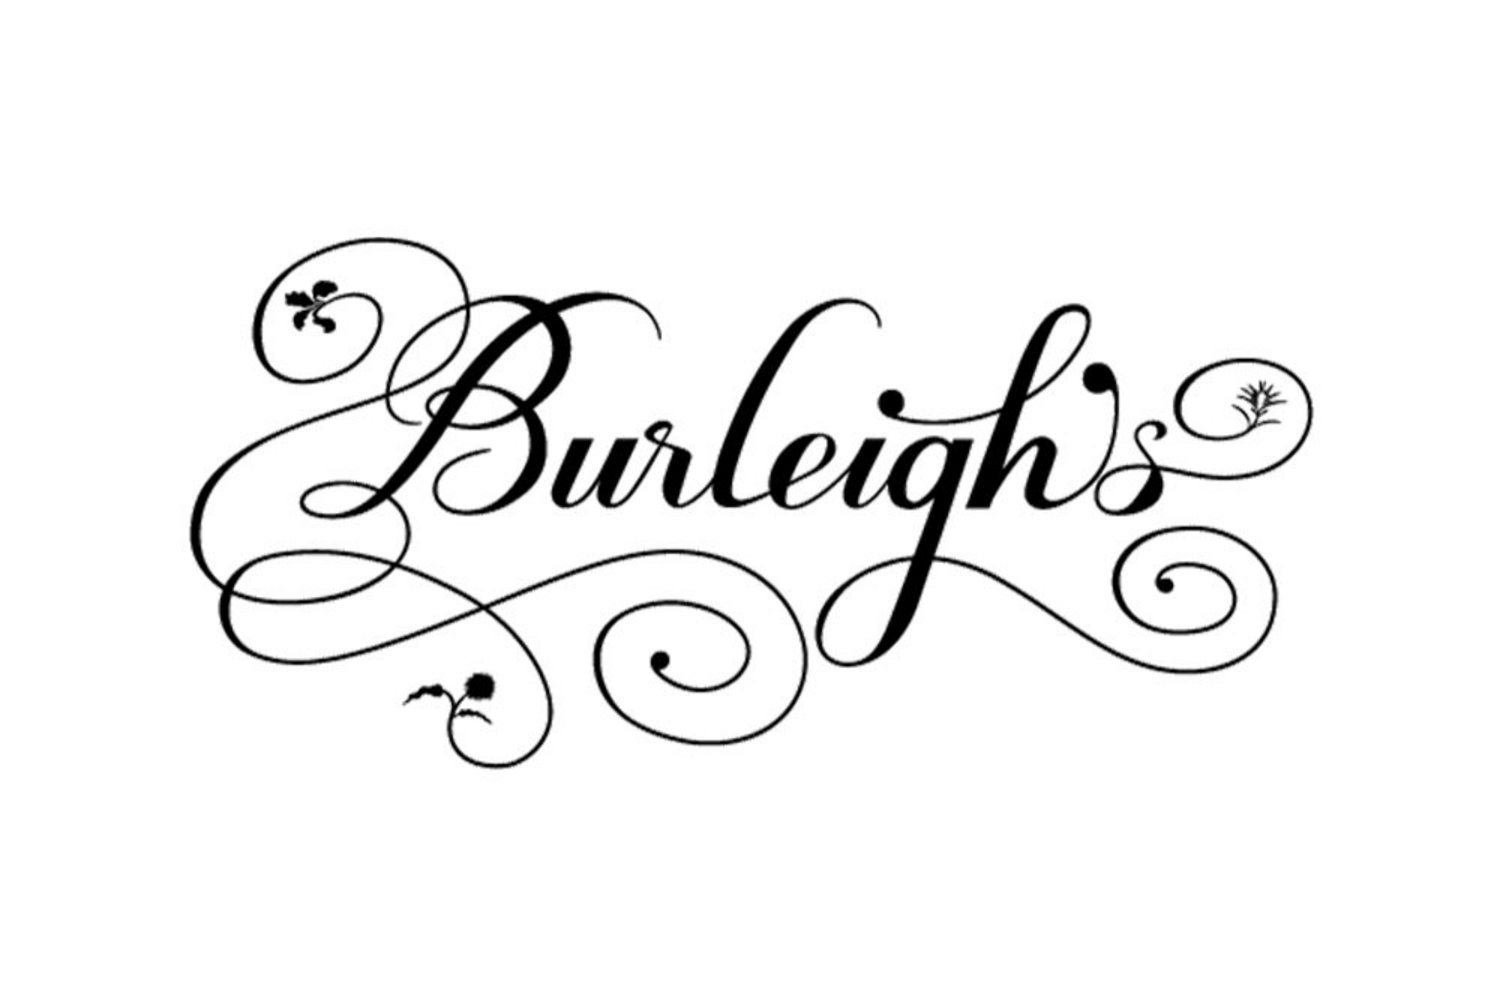 Burleigh's Logo